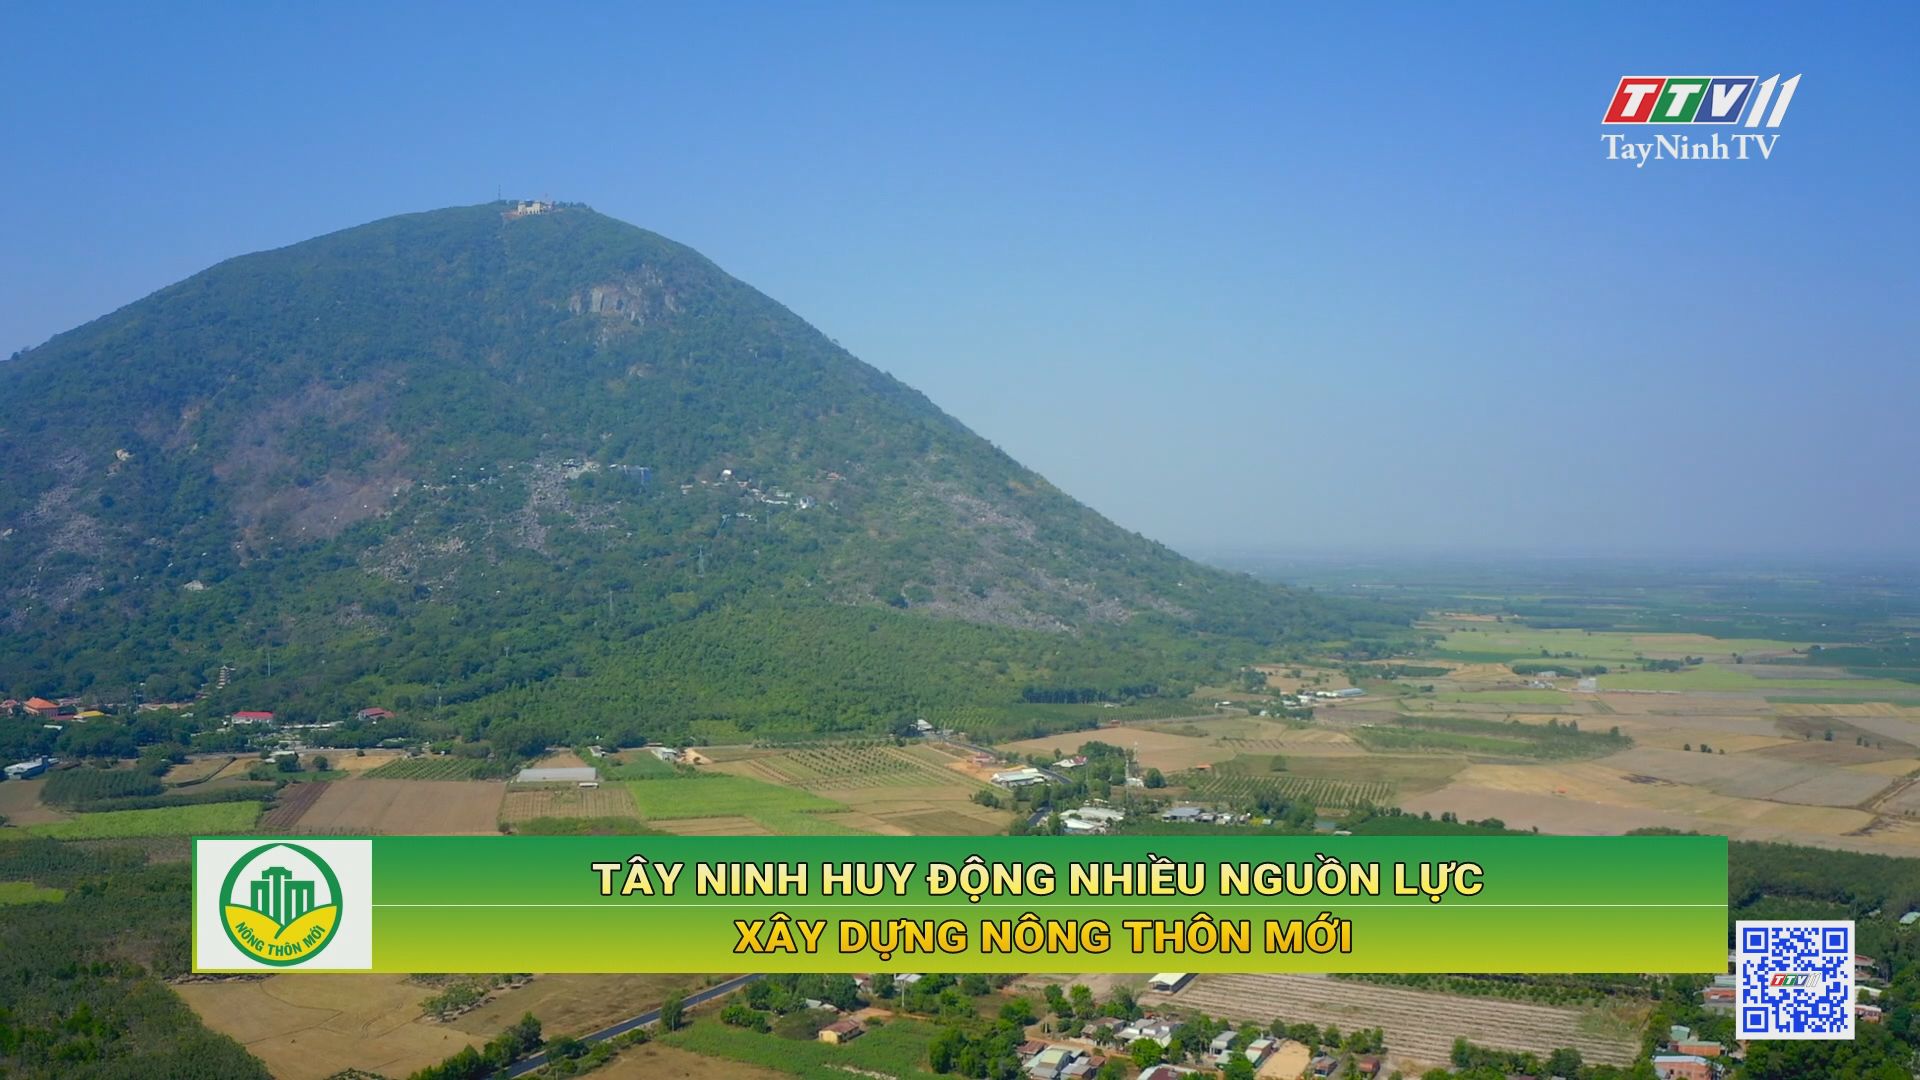 Tây Ninh huy động nhiều nguồn lực xây dựng nông thôn mới | TayNinhTV